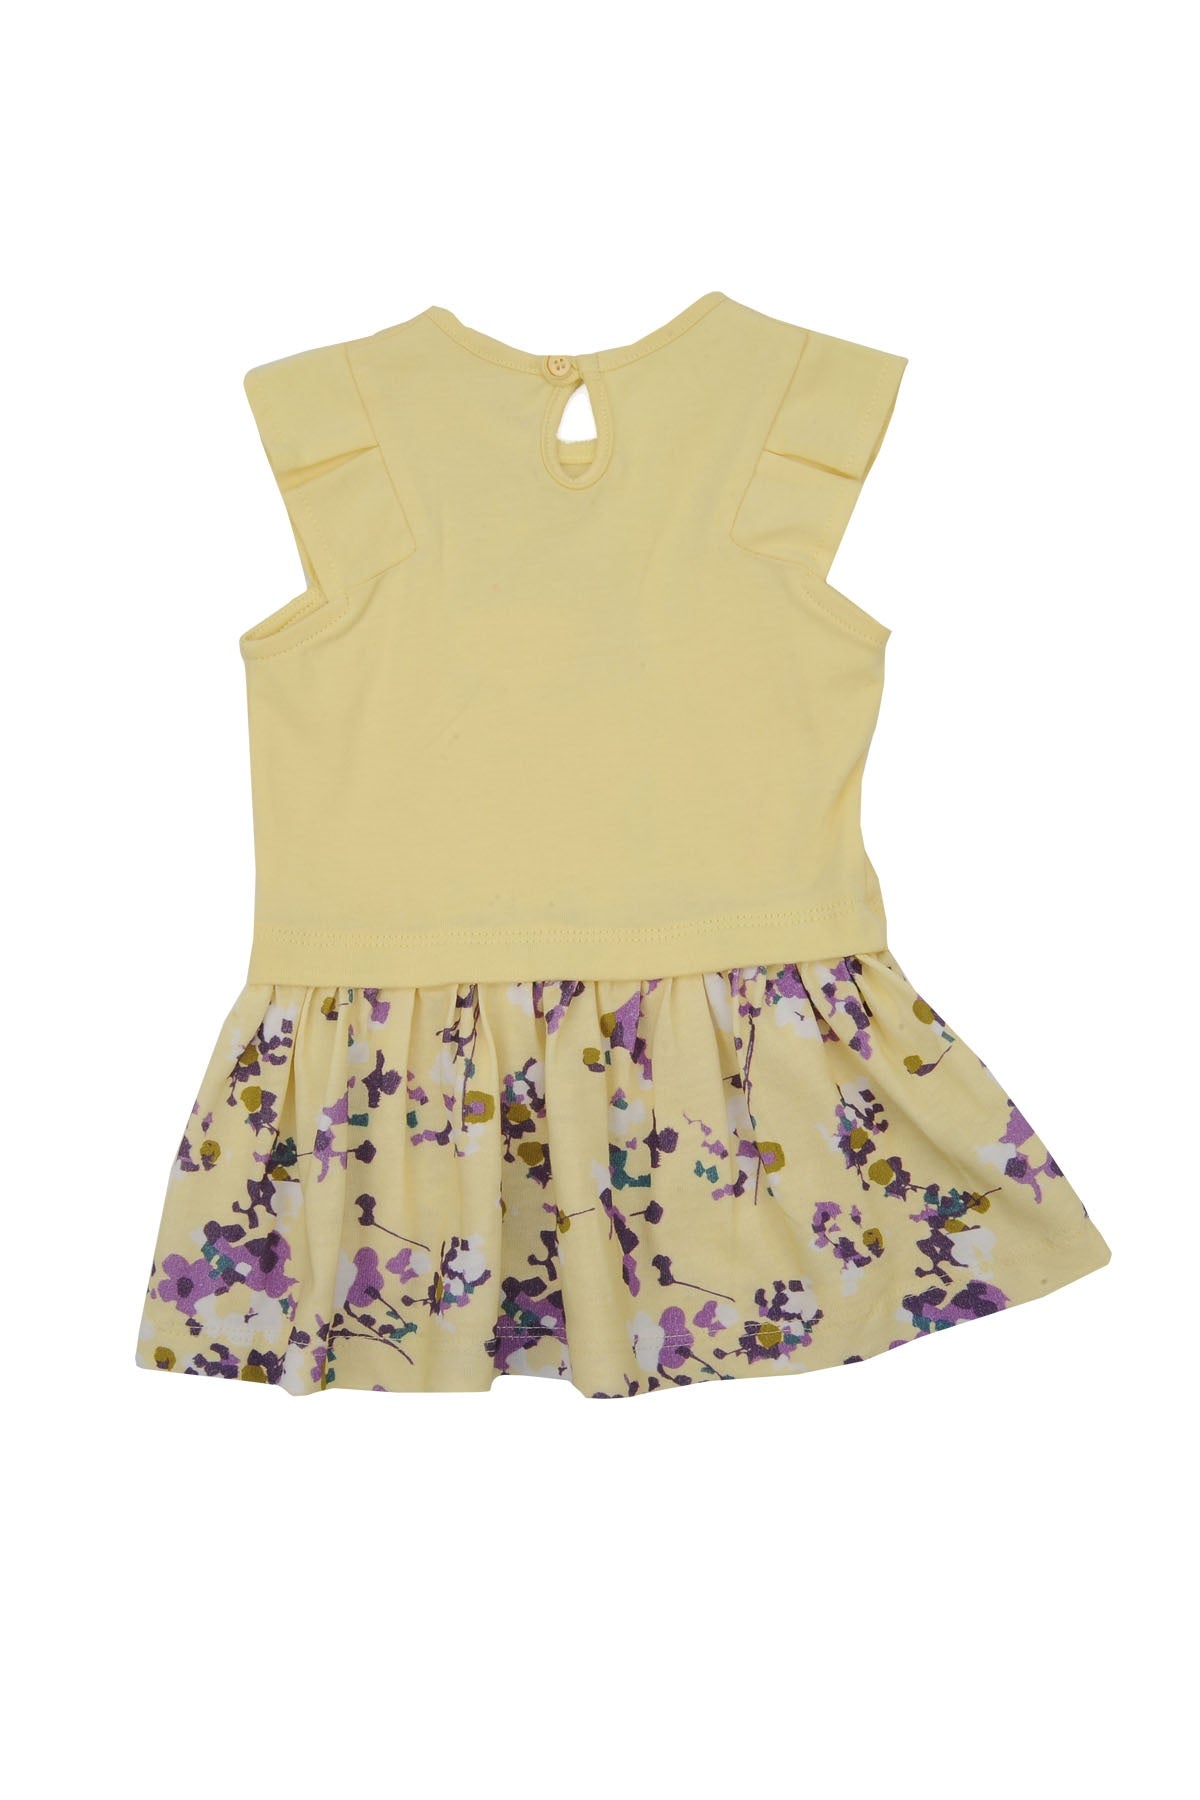 Kız Bebek Sarı Flowers Baskılı Elbise (6ay-4yaş)-1